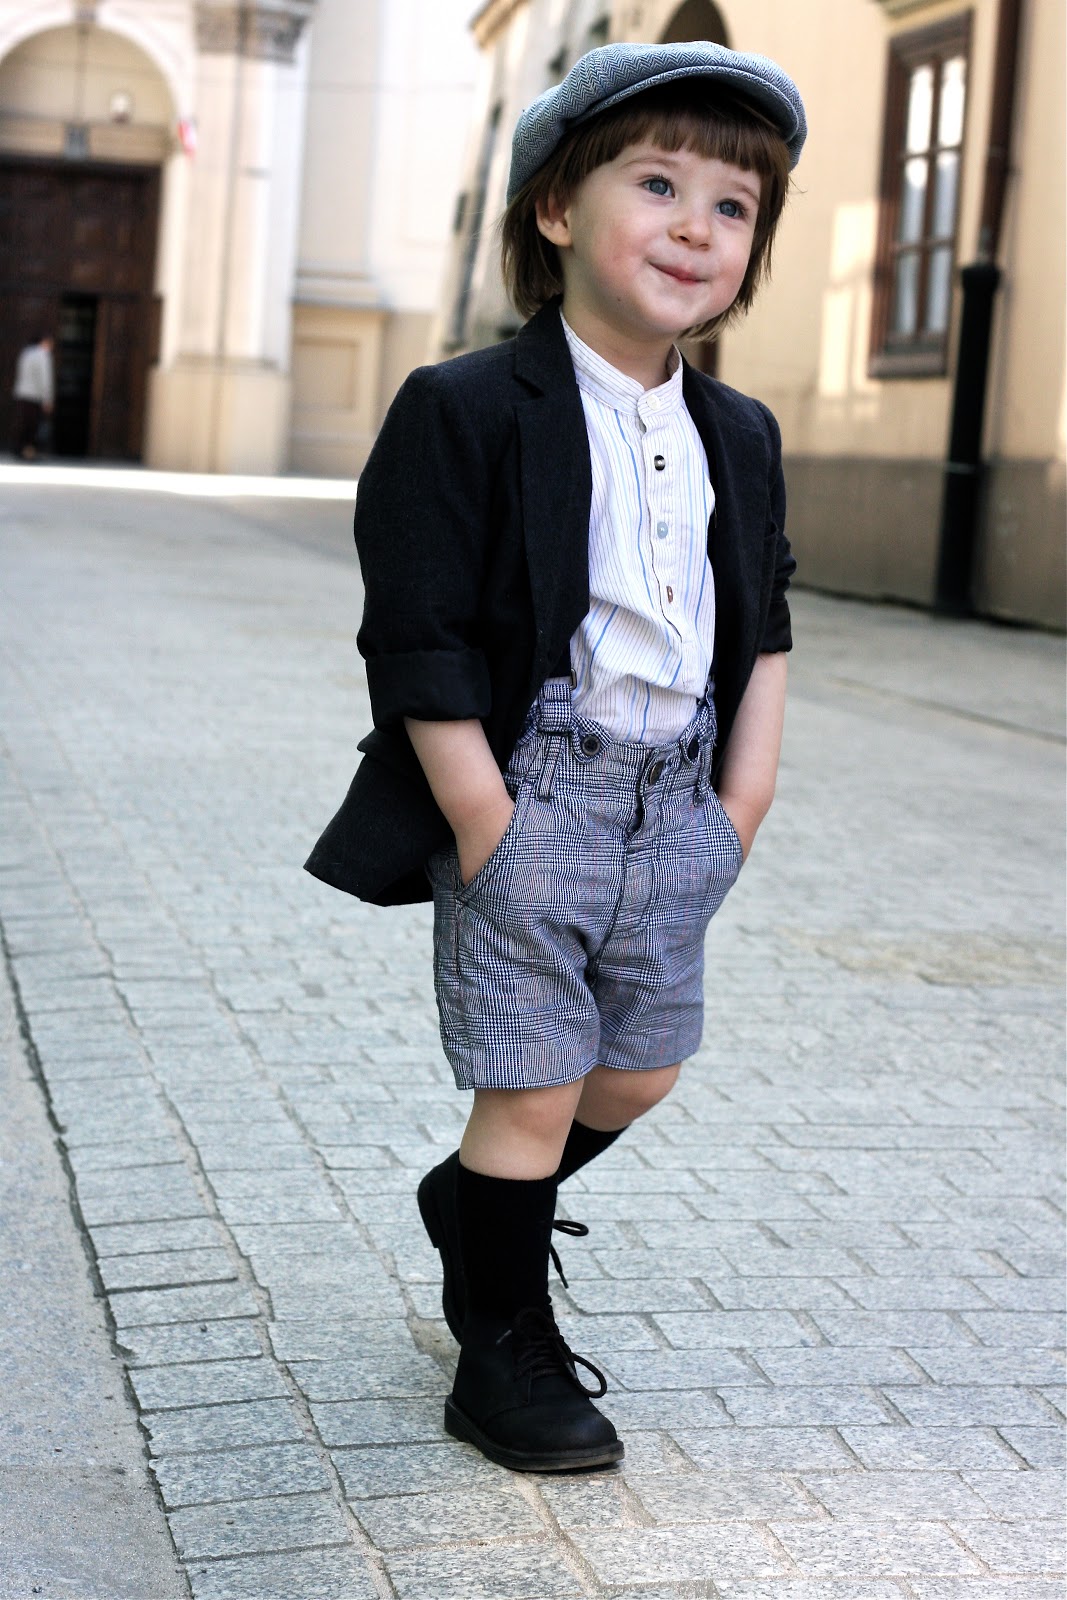 Маленький француз. Стиль Гаврош. Парижский Гаврош стиль. Стильный образ для мальчика 10 лет. Французский стиль в одежде для мальчиков.